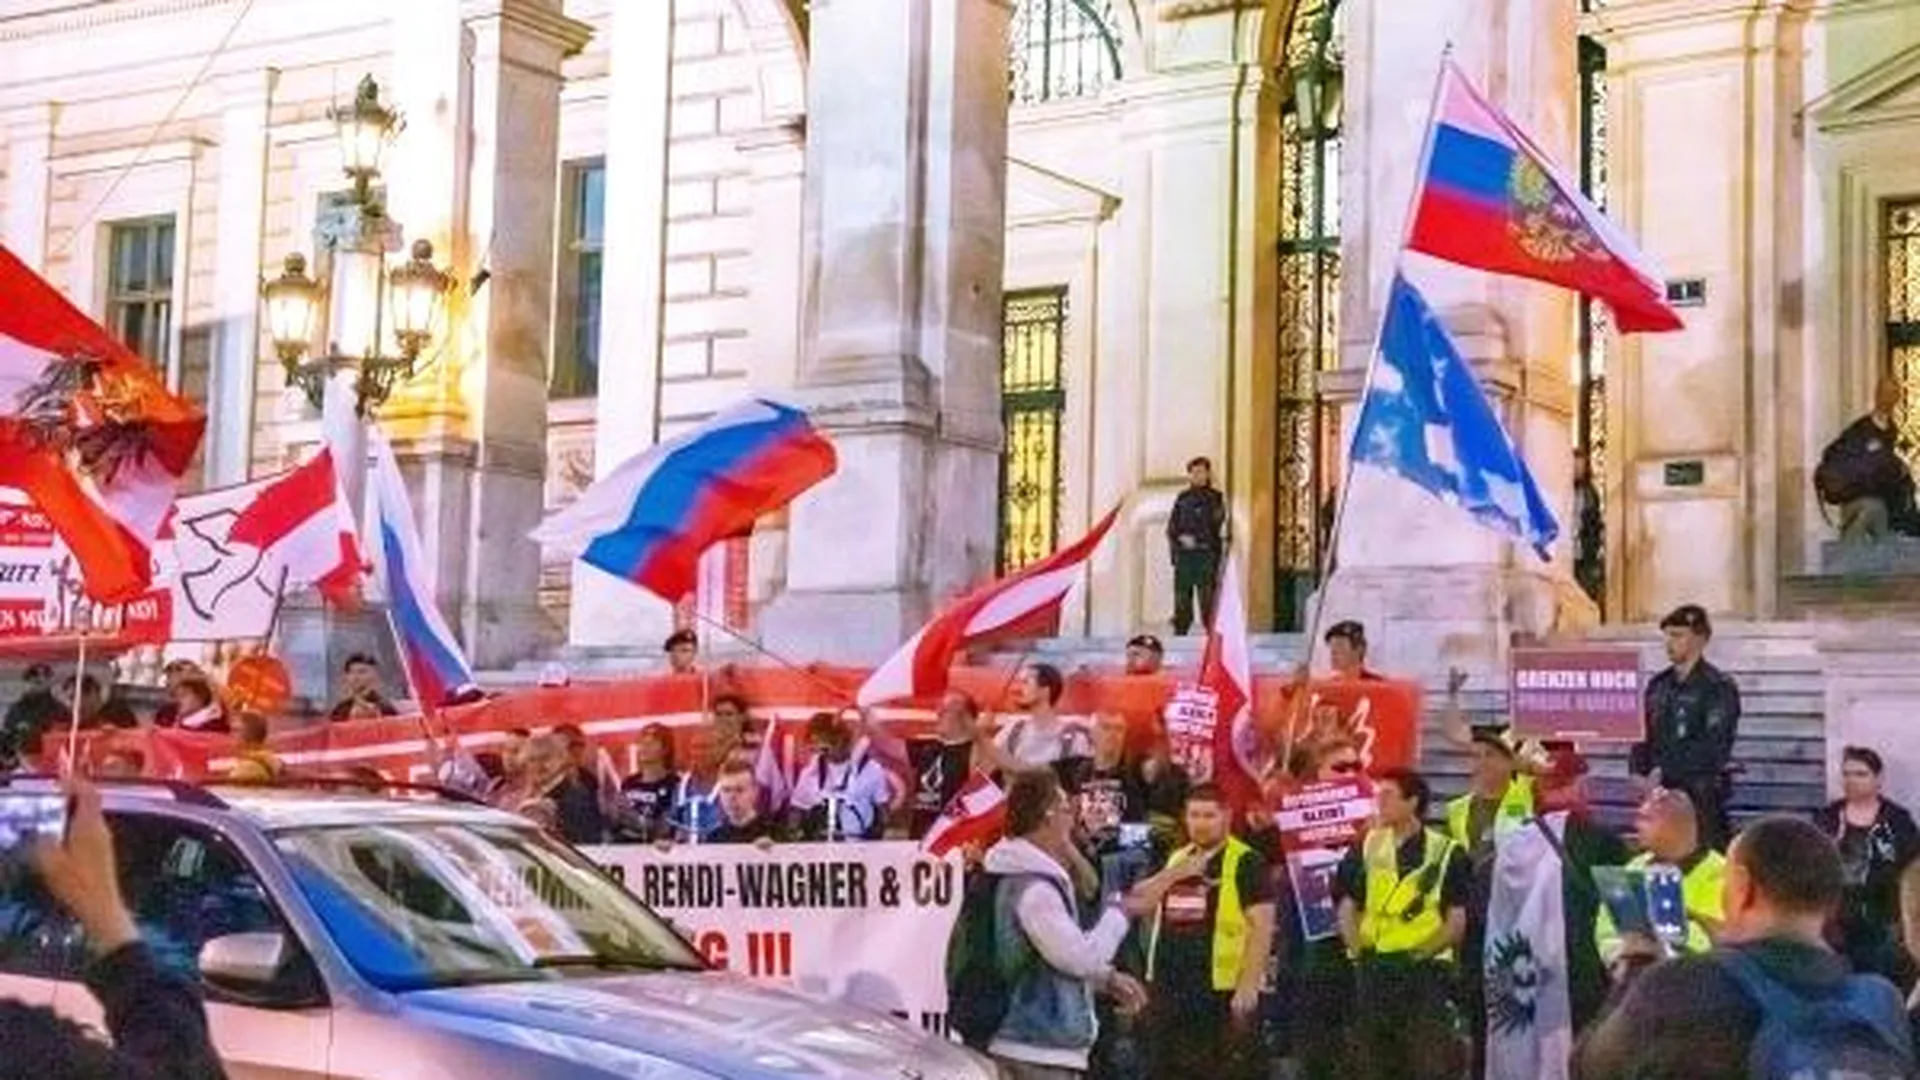 Участники акции, выступающие против антироссийской политики, на одной из улиц в Вене. Собравшиеся потребовали снижения цен, отмены санкций против России и дружбы с Москвой